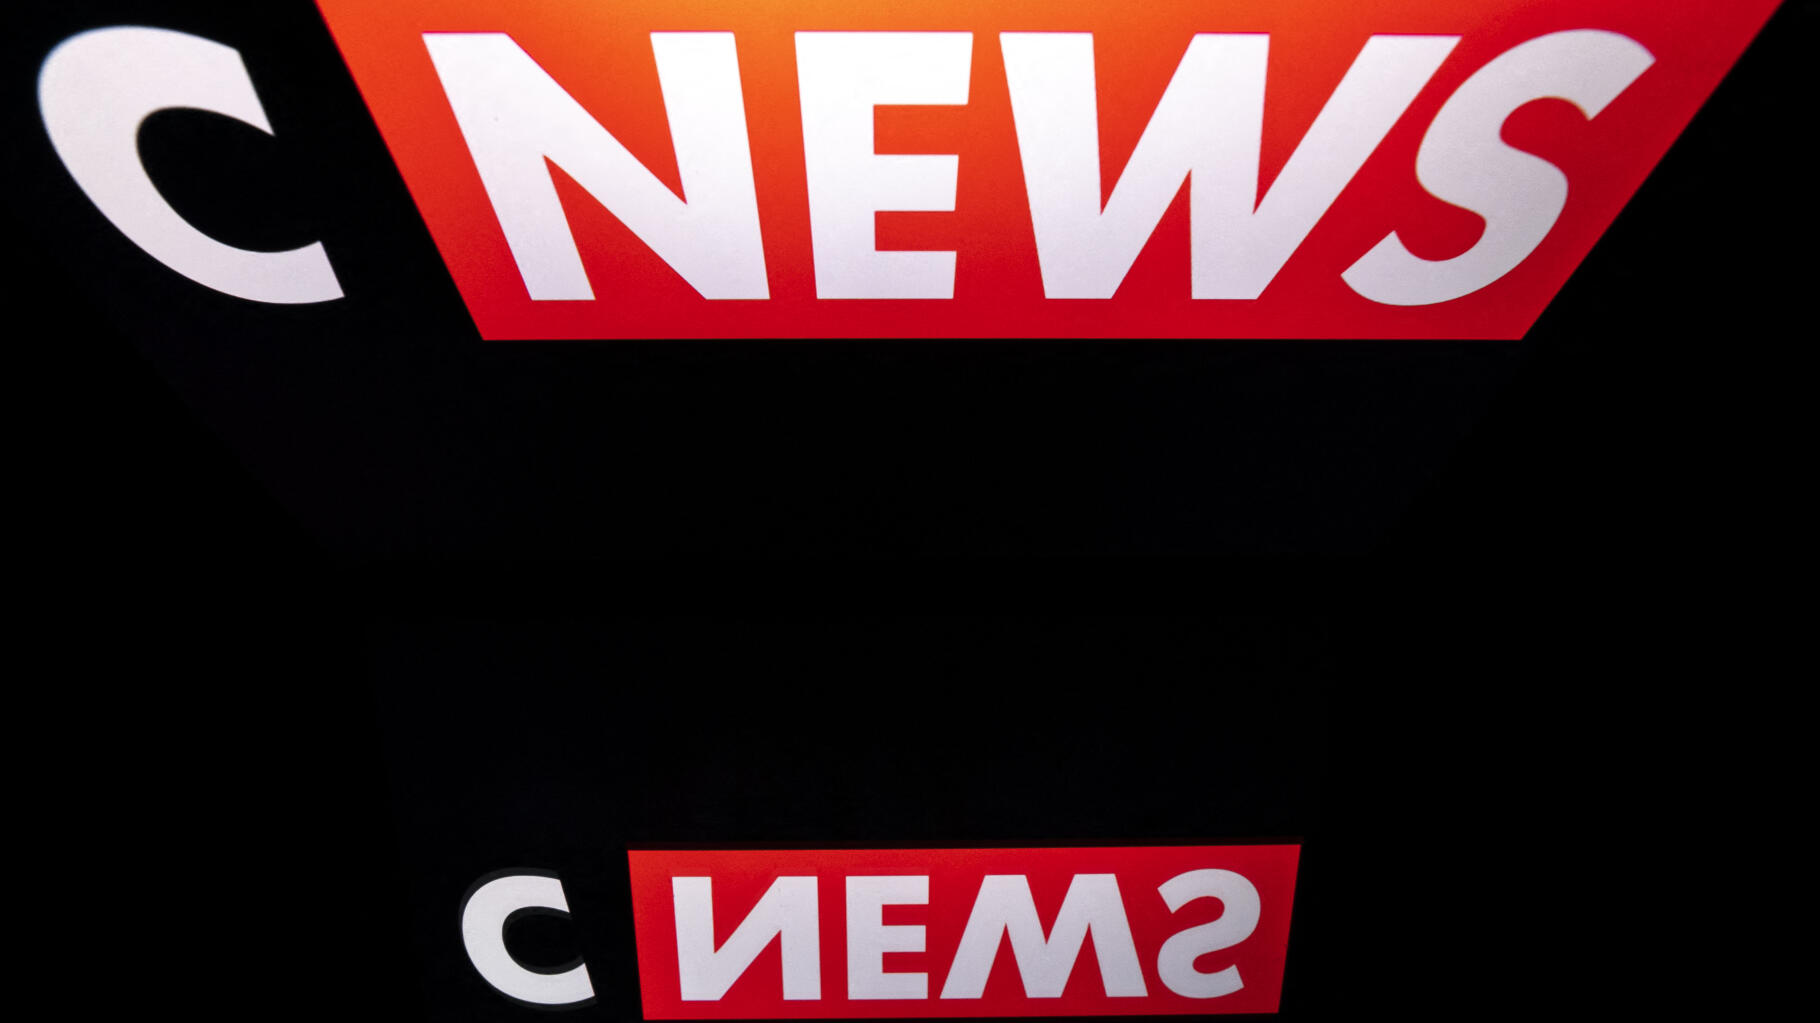   Le Conseil d’État somme l’Arcom de mieux contrôler la chaîne CNews  